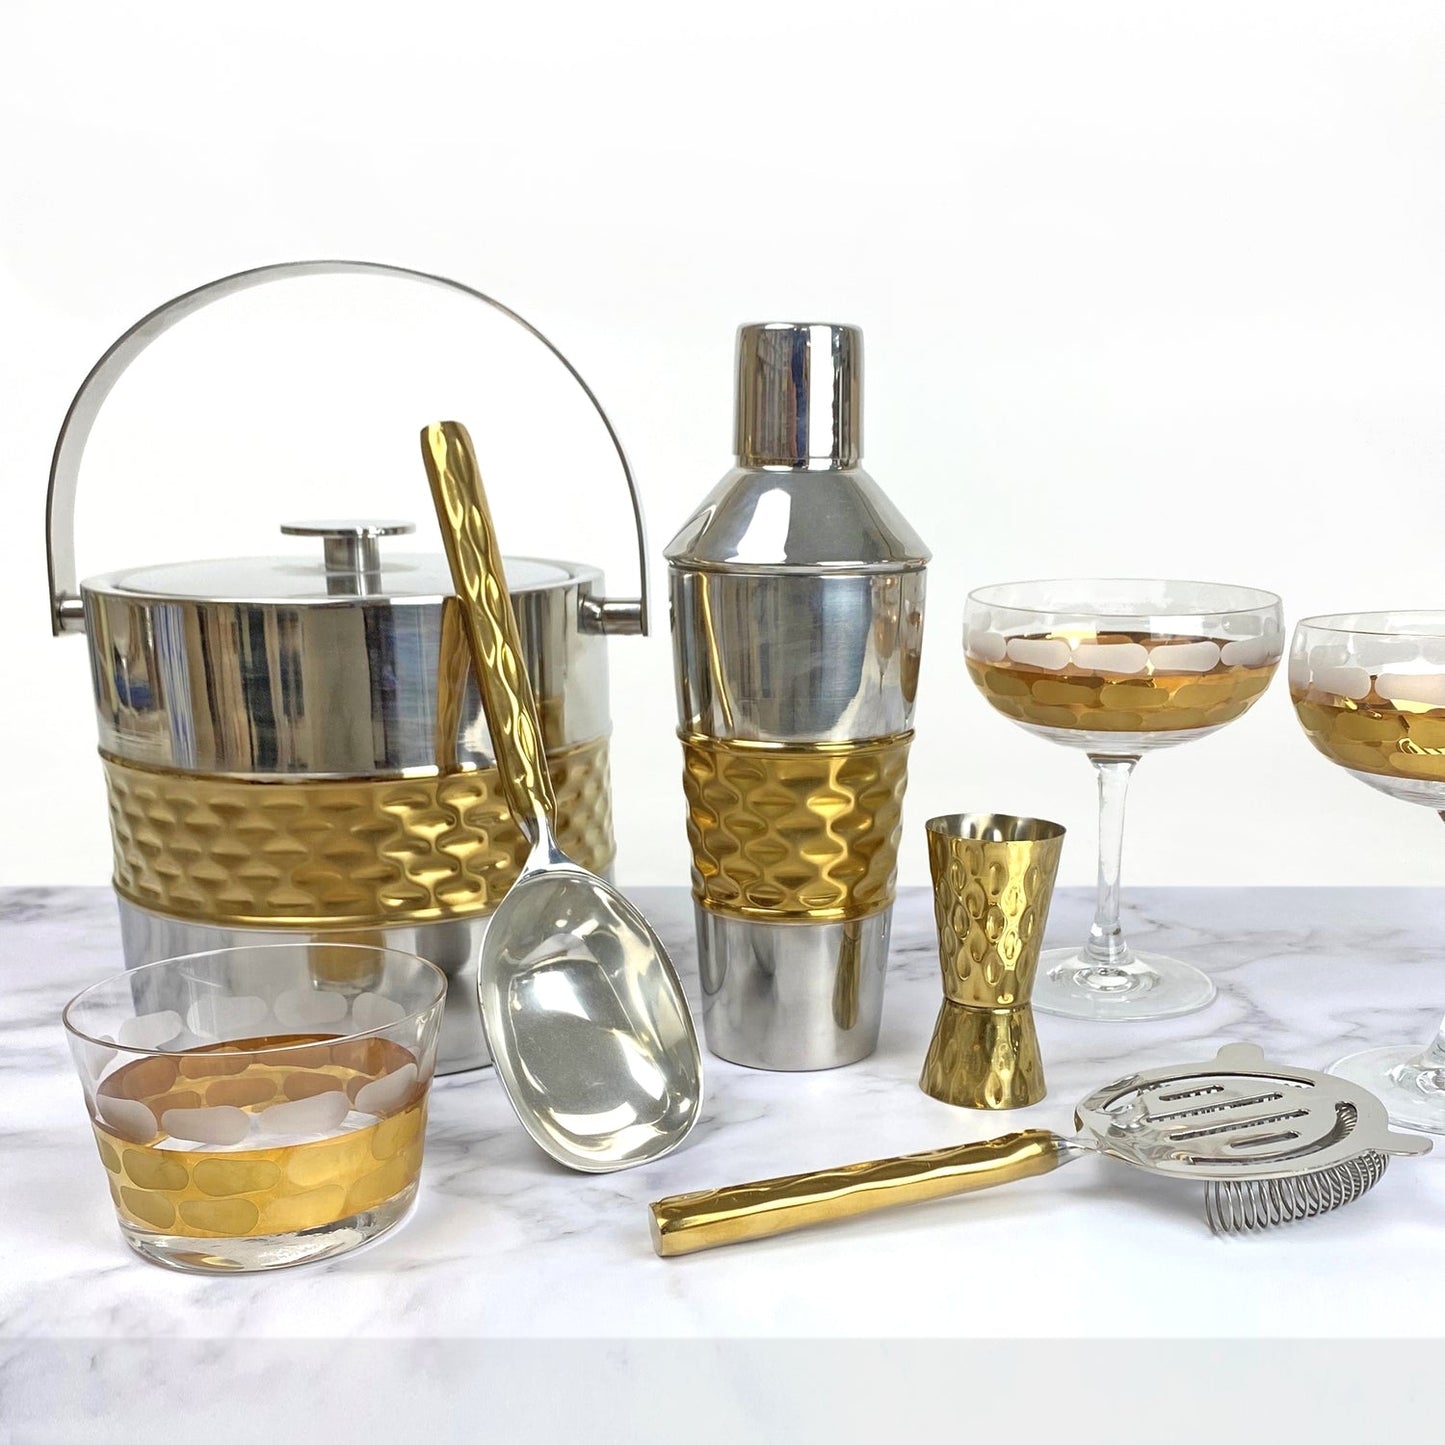 Truro Small Glass Bowl - Gold